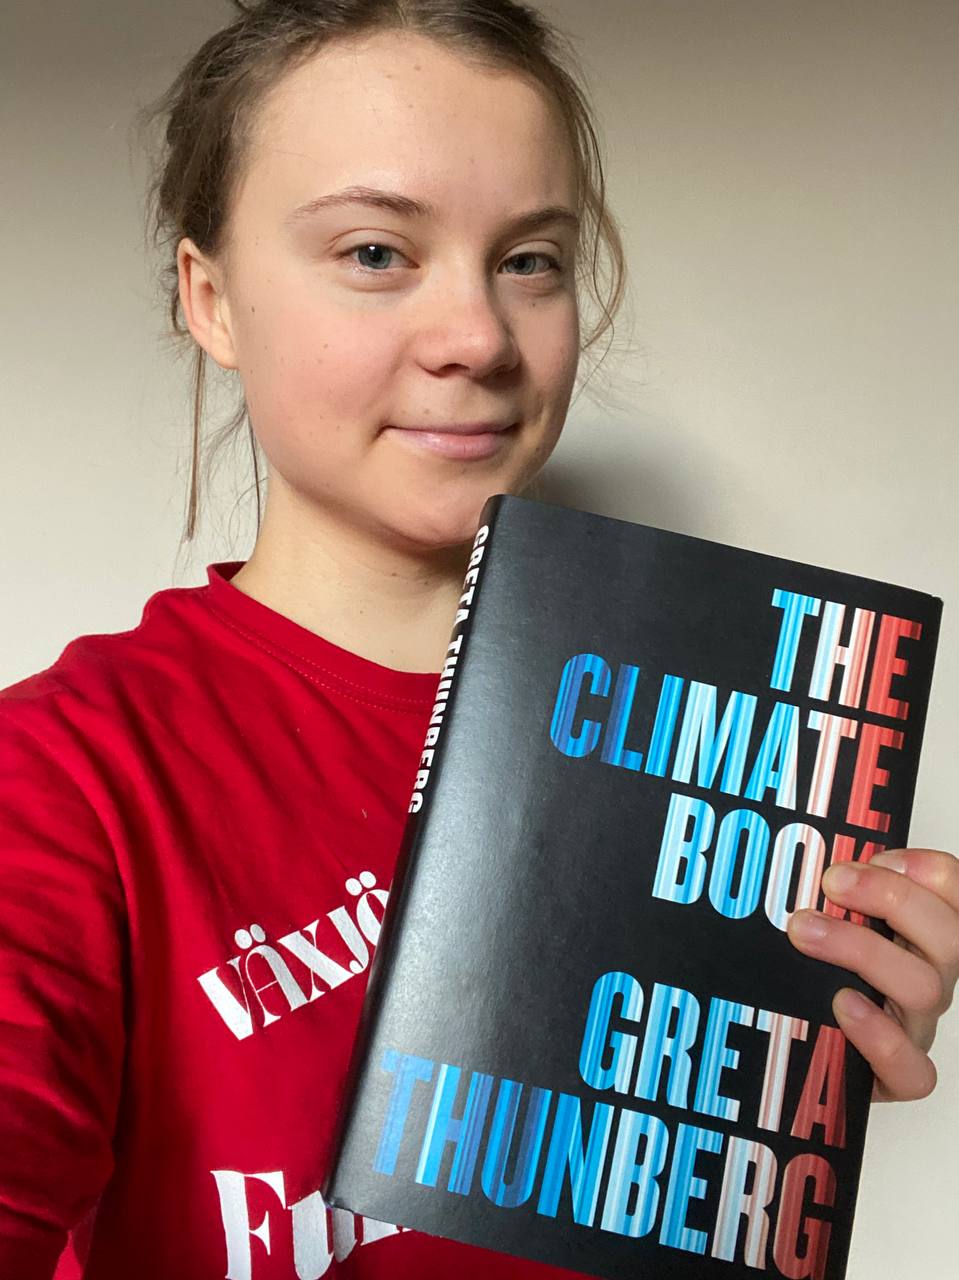 Quyển sách mới xuất bản của Greta Thunberg đang gây sự chú ý đặc biệt trên toàn cầu  - Ảnh: penguinpress